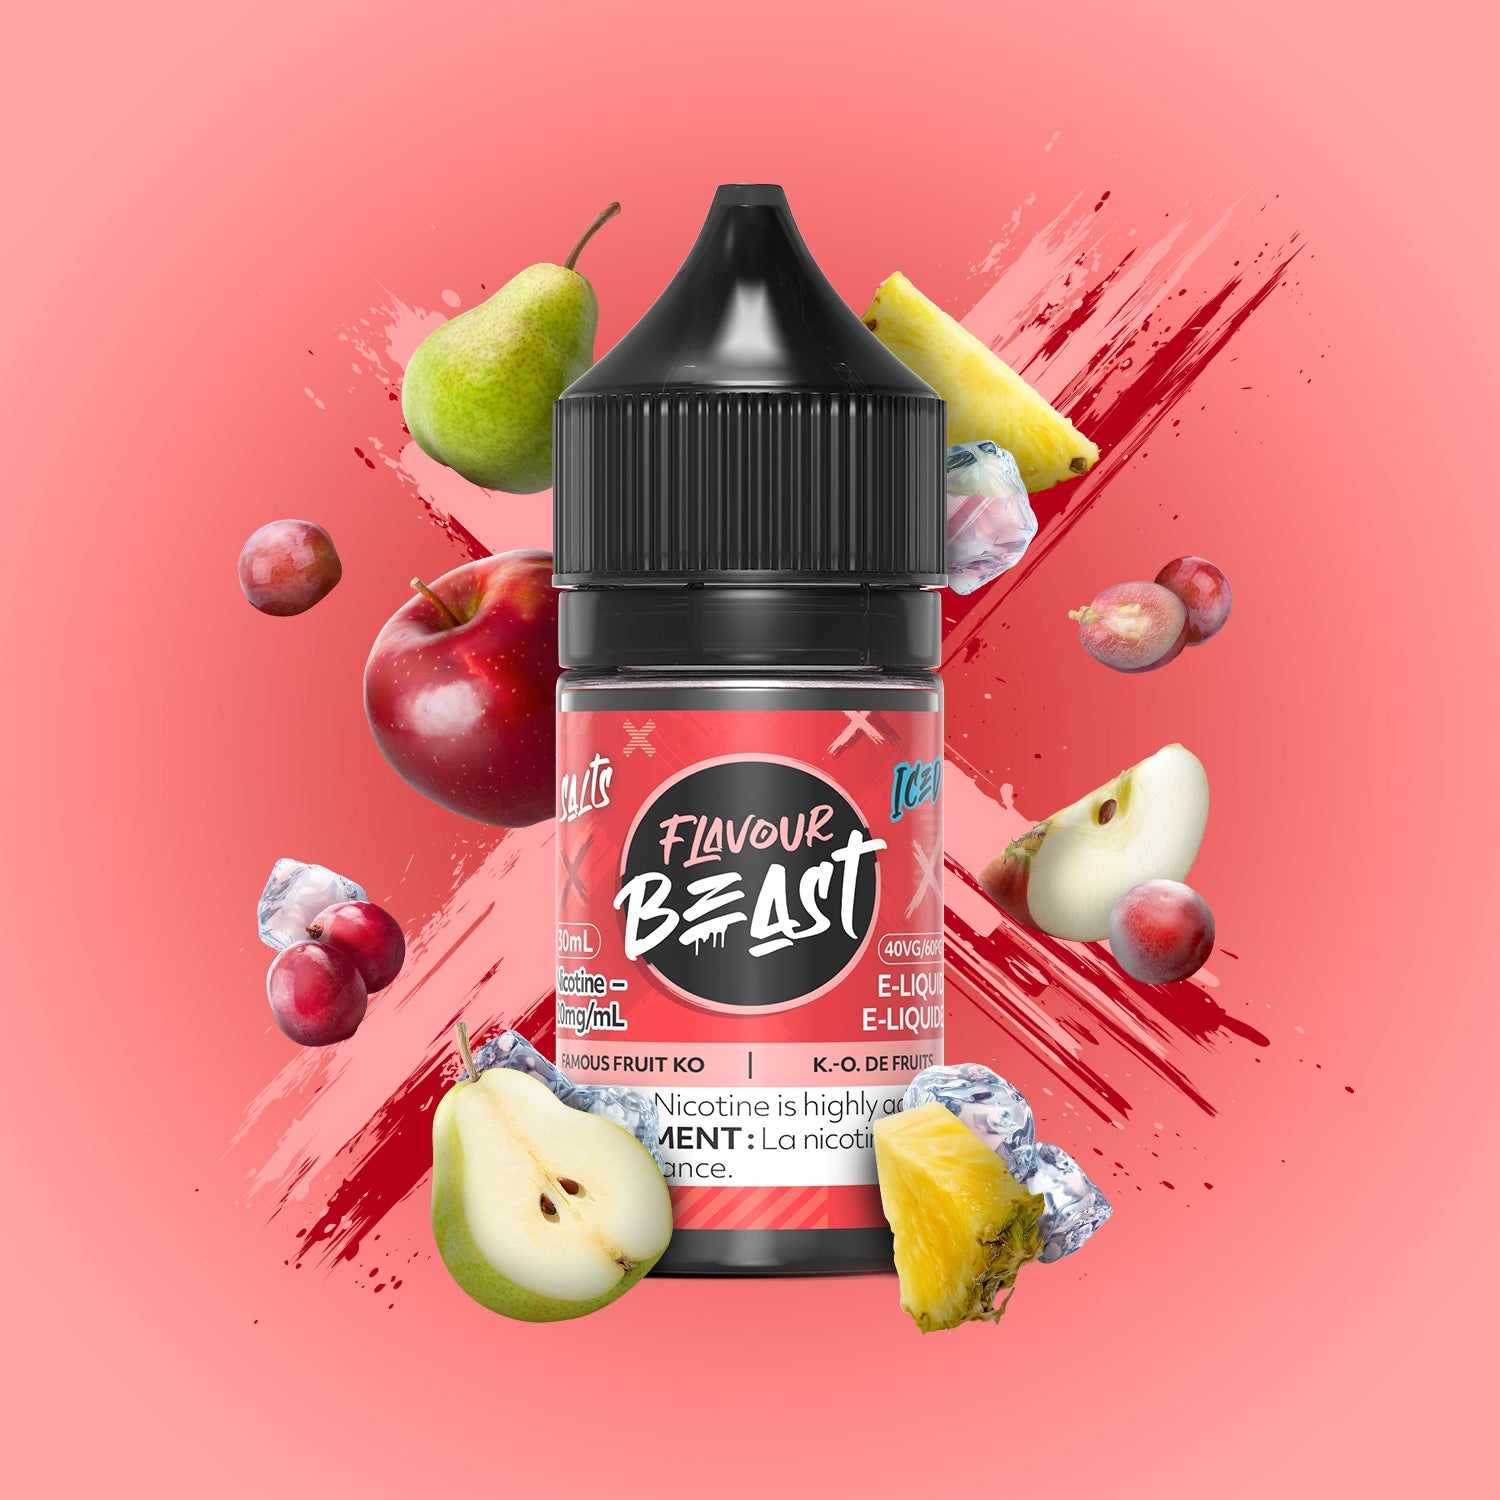 Flavour Beast Salt - Famous Fruit KO Iced (EXCISE TAXED)